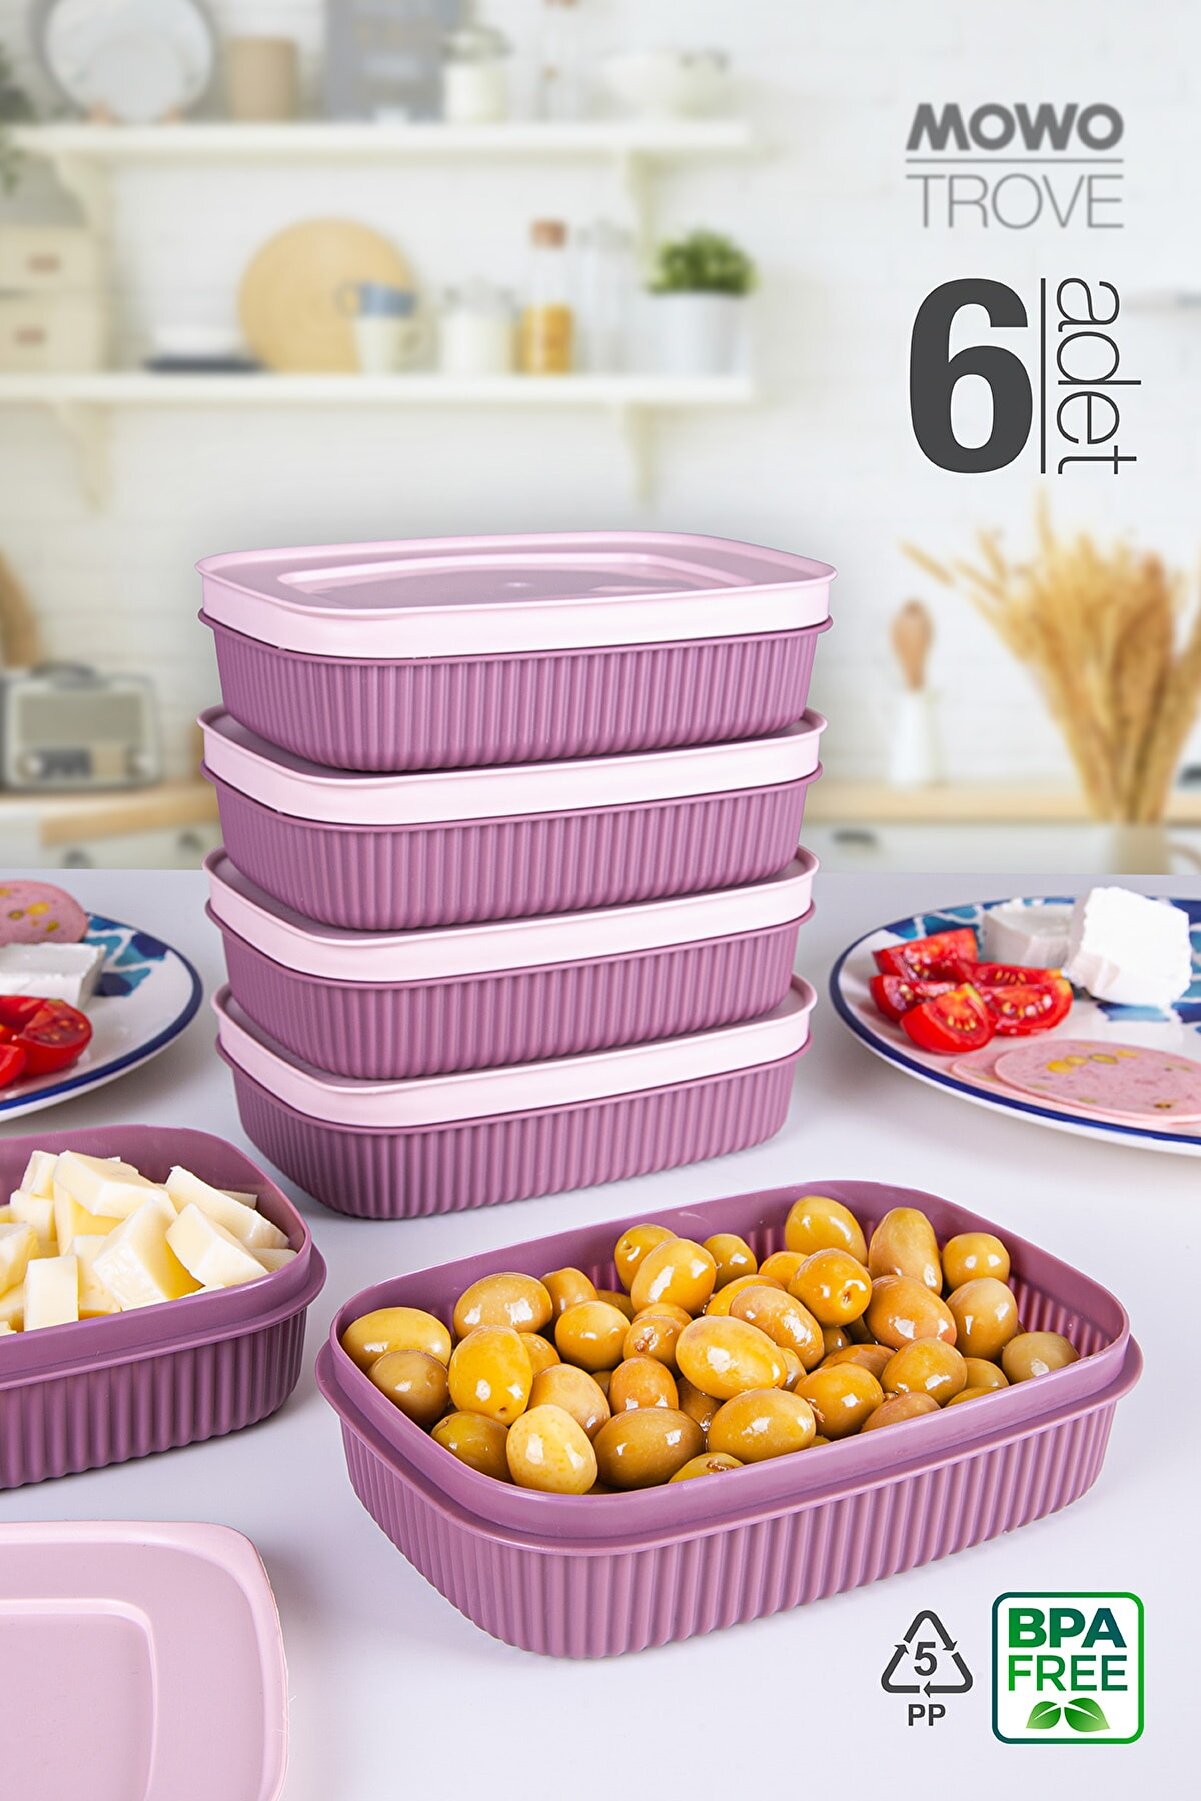 Mowo Home Trove Mini (MÜRDÜM) Kapaklı Kahvaltılık Buzdolabı Kabı 600ml Mutfak Plastik Pratik Saklama Kabı